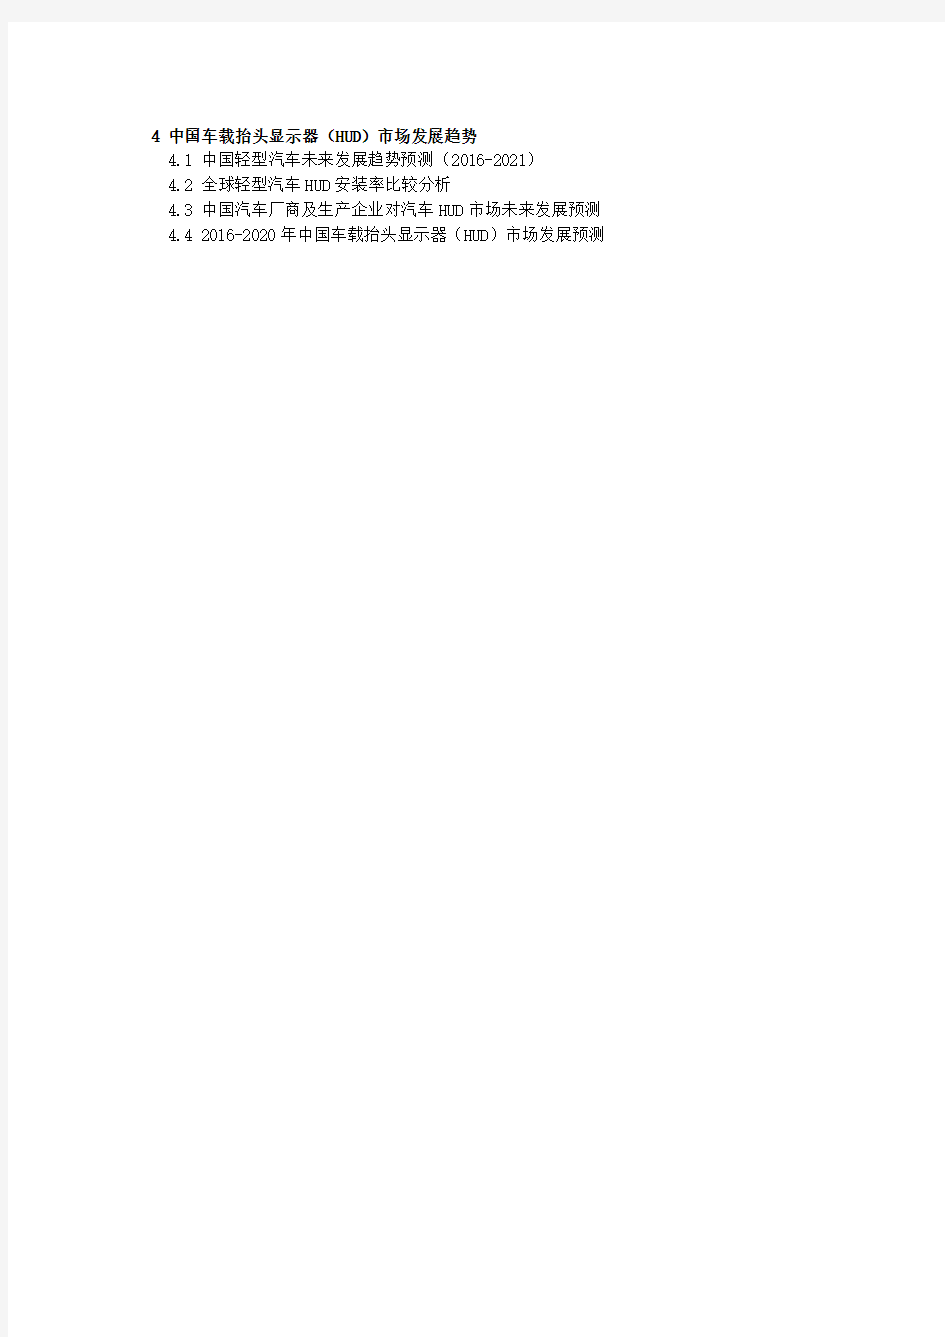 2015-2016中国车载抬头显示器(HUD)市场研究报告(奥尔威)